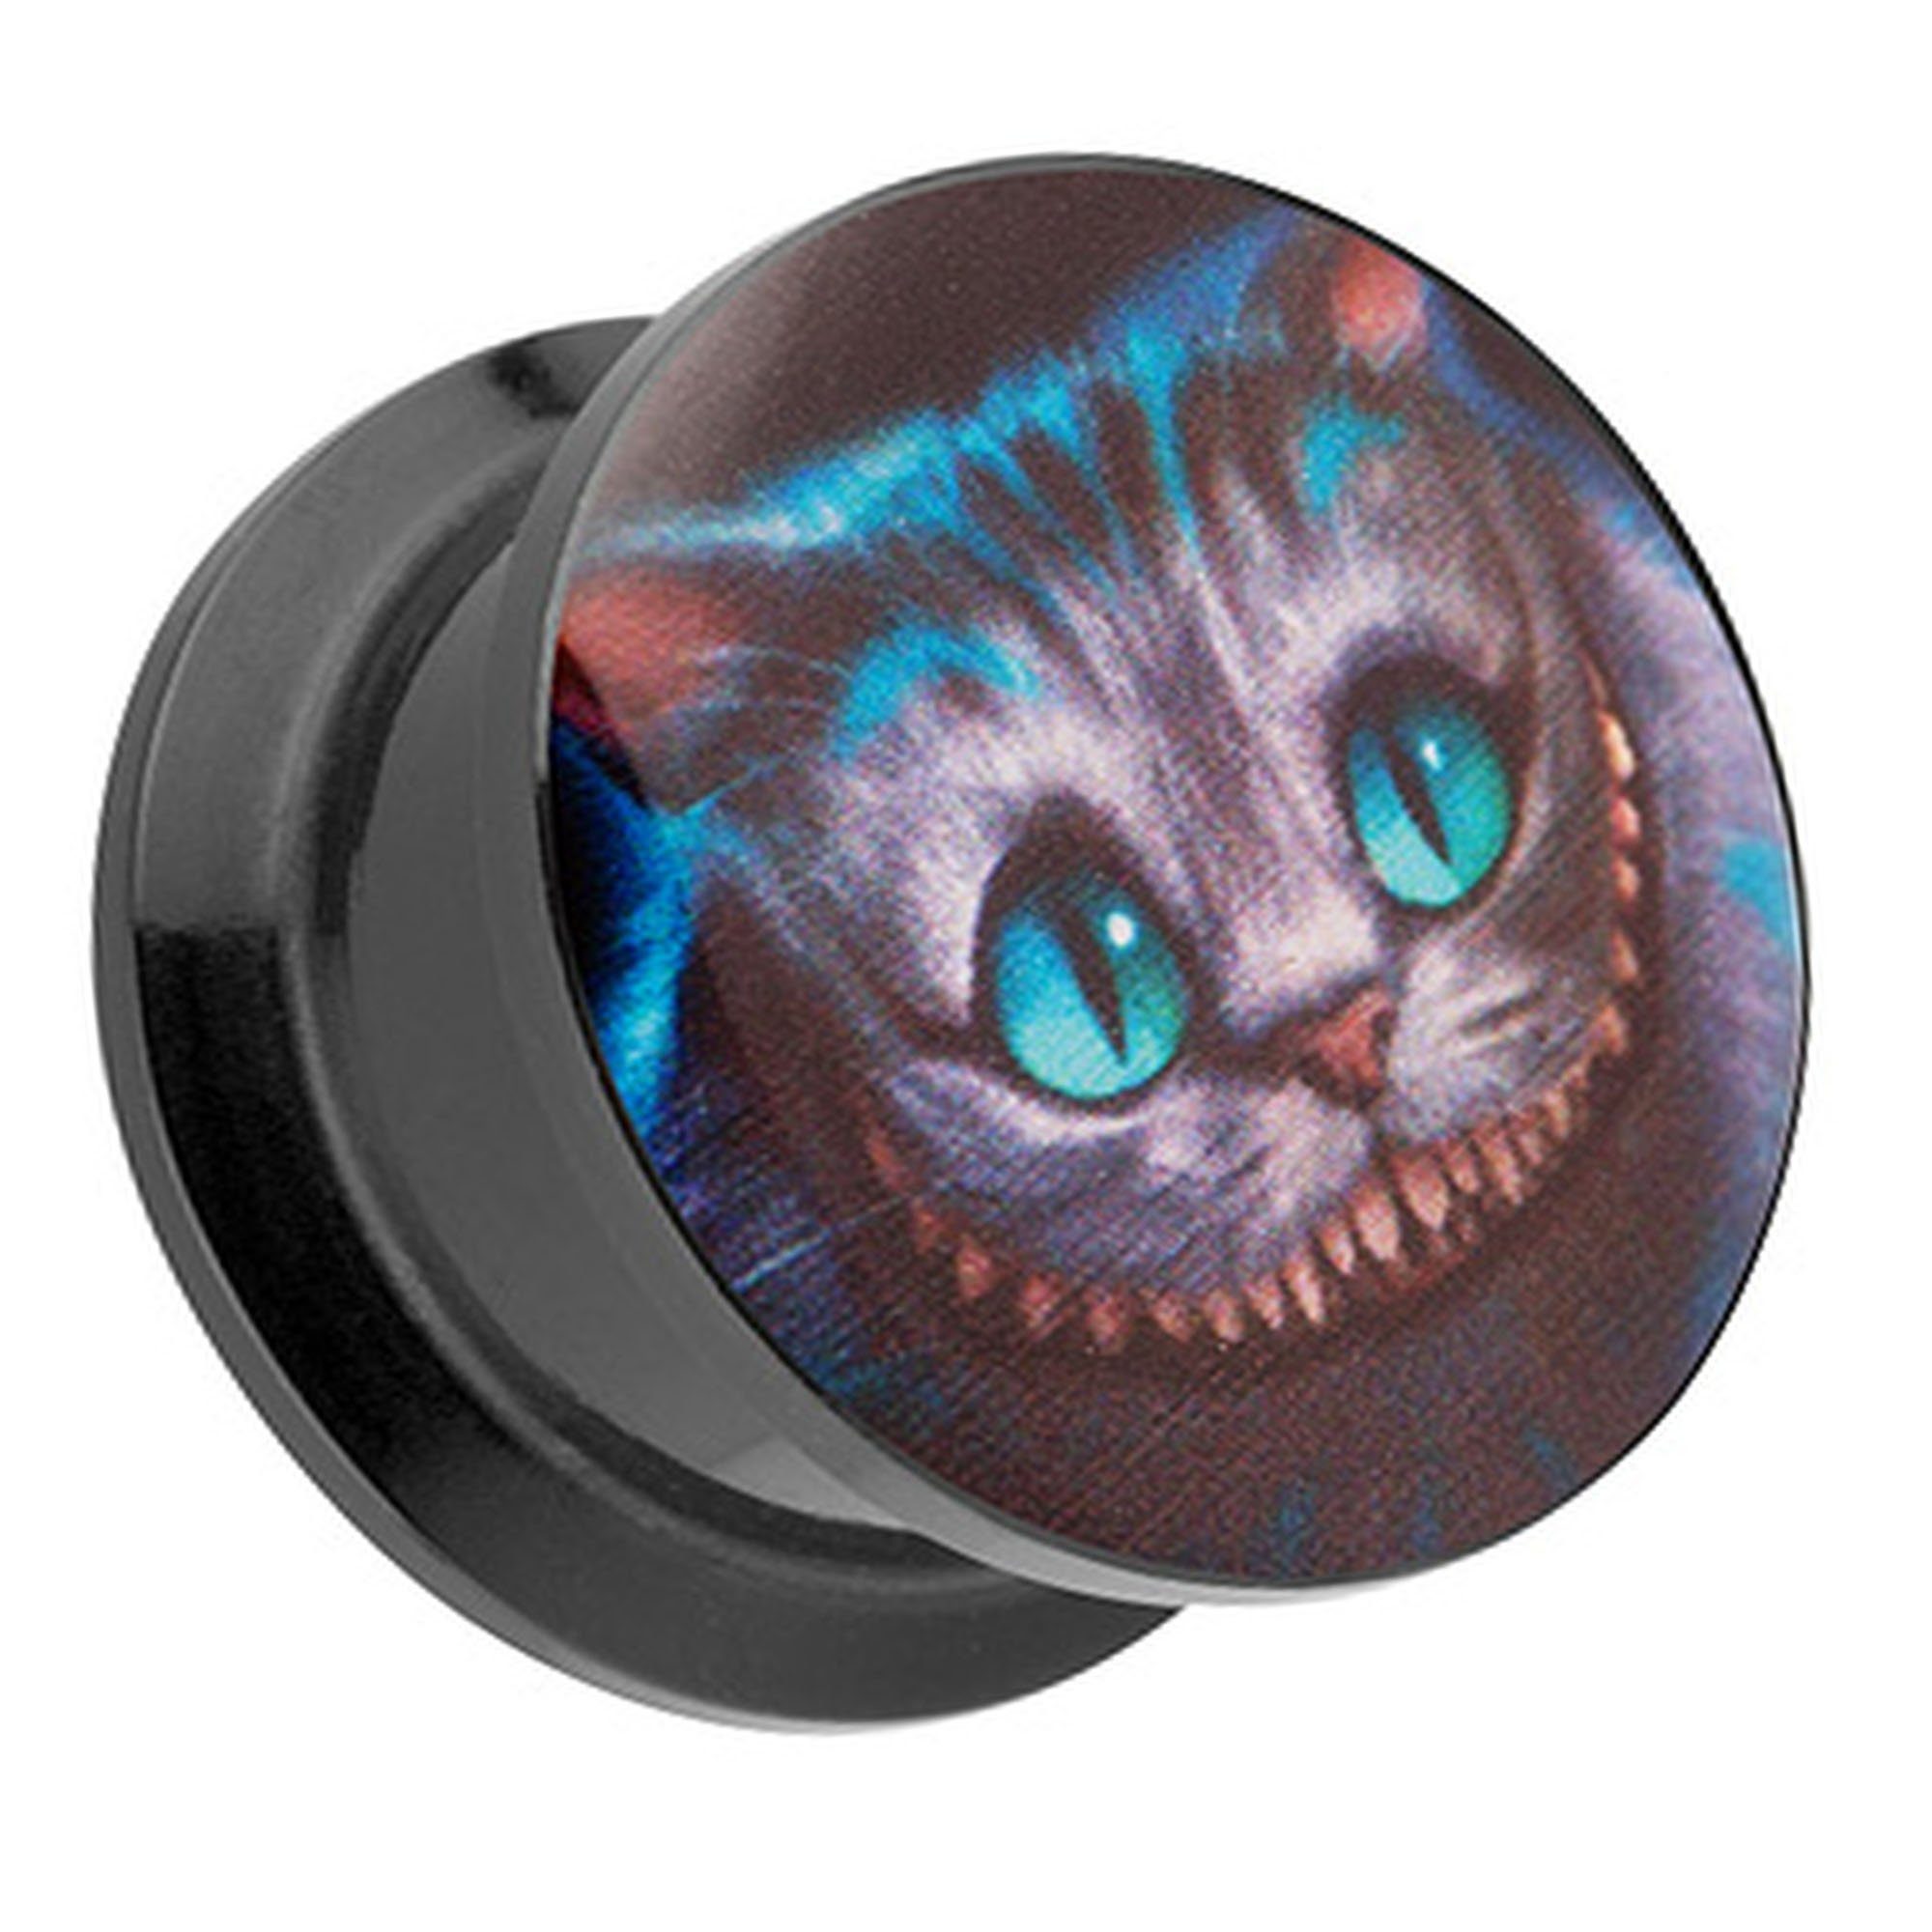 Taffstyle Plug Piercing Wunderland Grinsekatze Cheshire Cat Katze, Ohr Plug Flesh Tunnel Ohrpiercing Kunststoff Schraubverschluß Picture